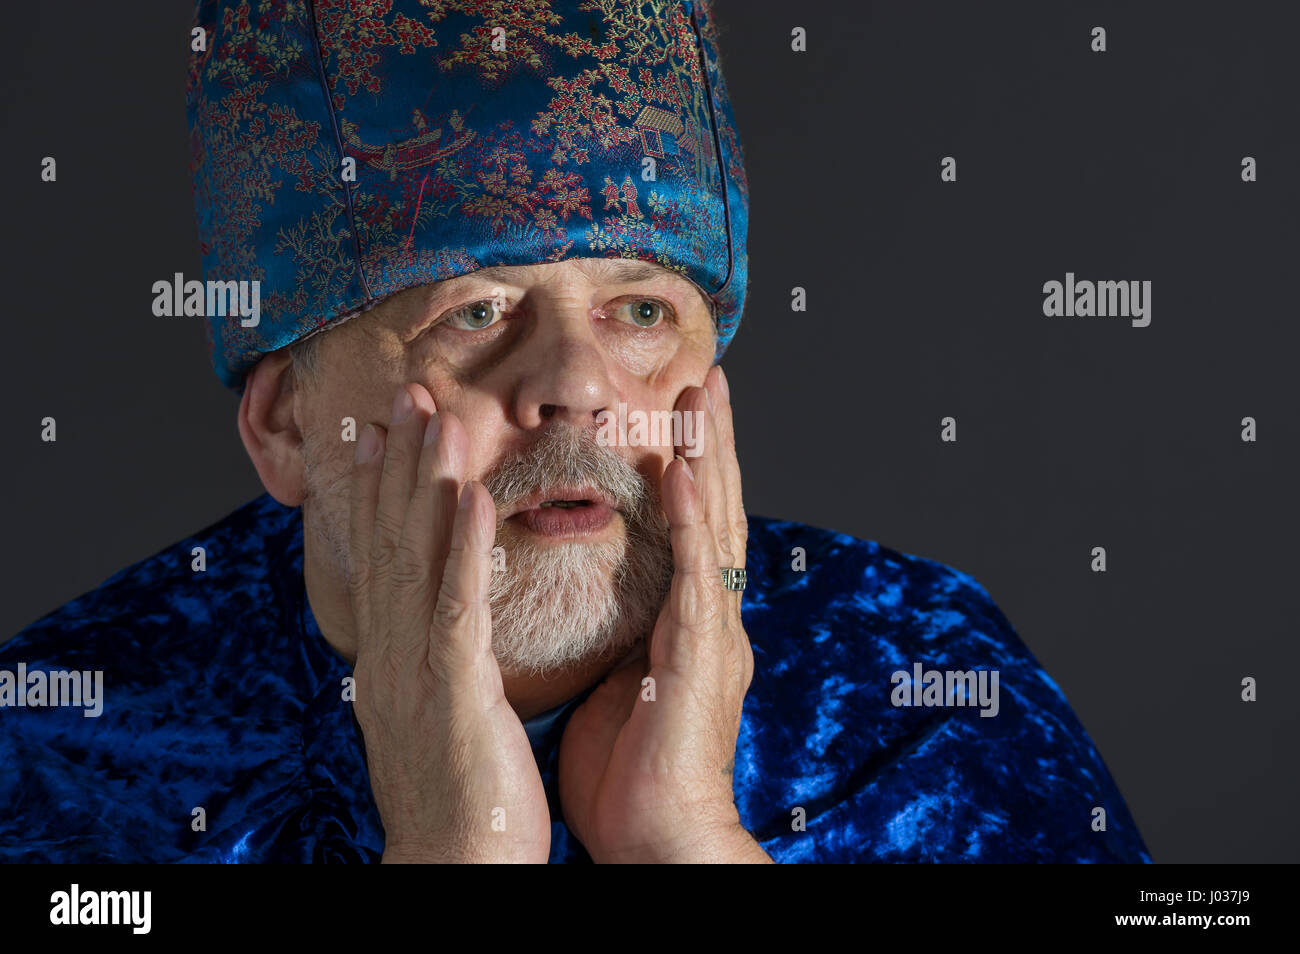 Ritratto di sollecite senior uomo in blu i vestiti orientali contro uno sfondo scuro Foto Stock